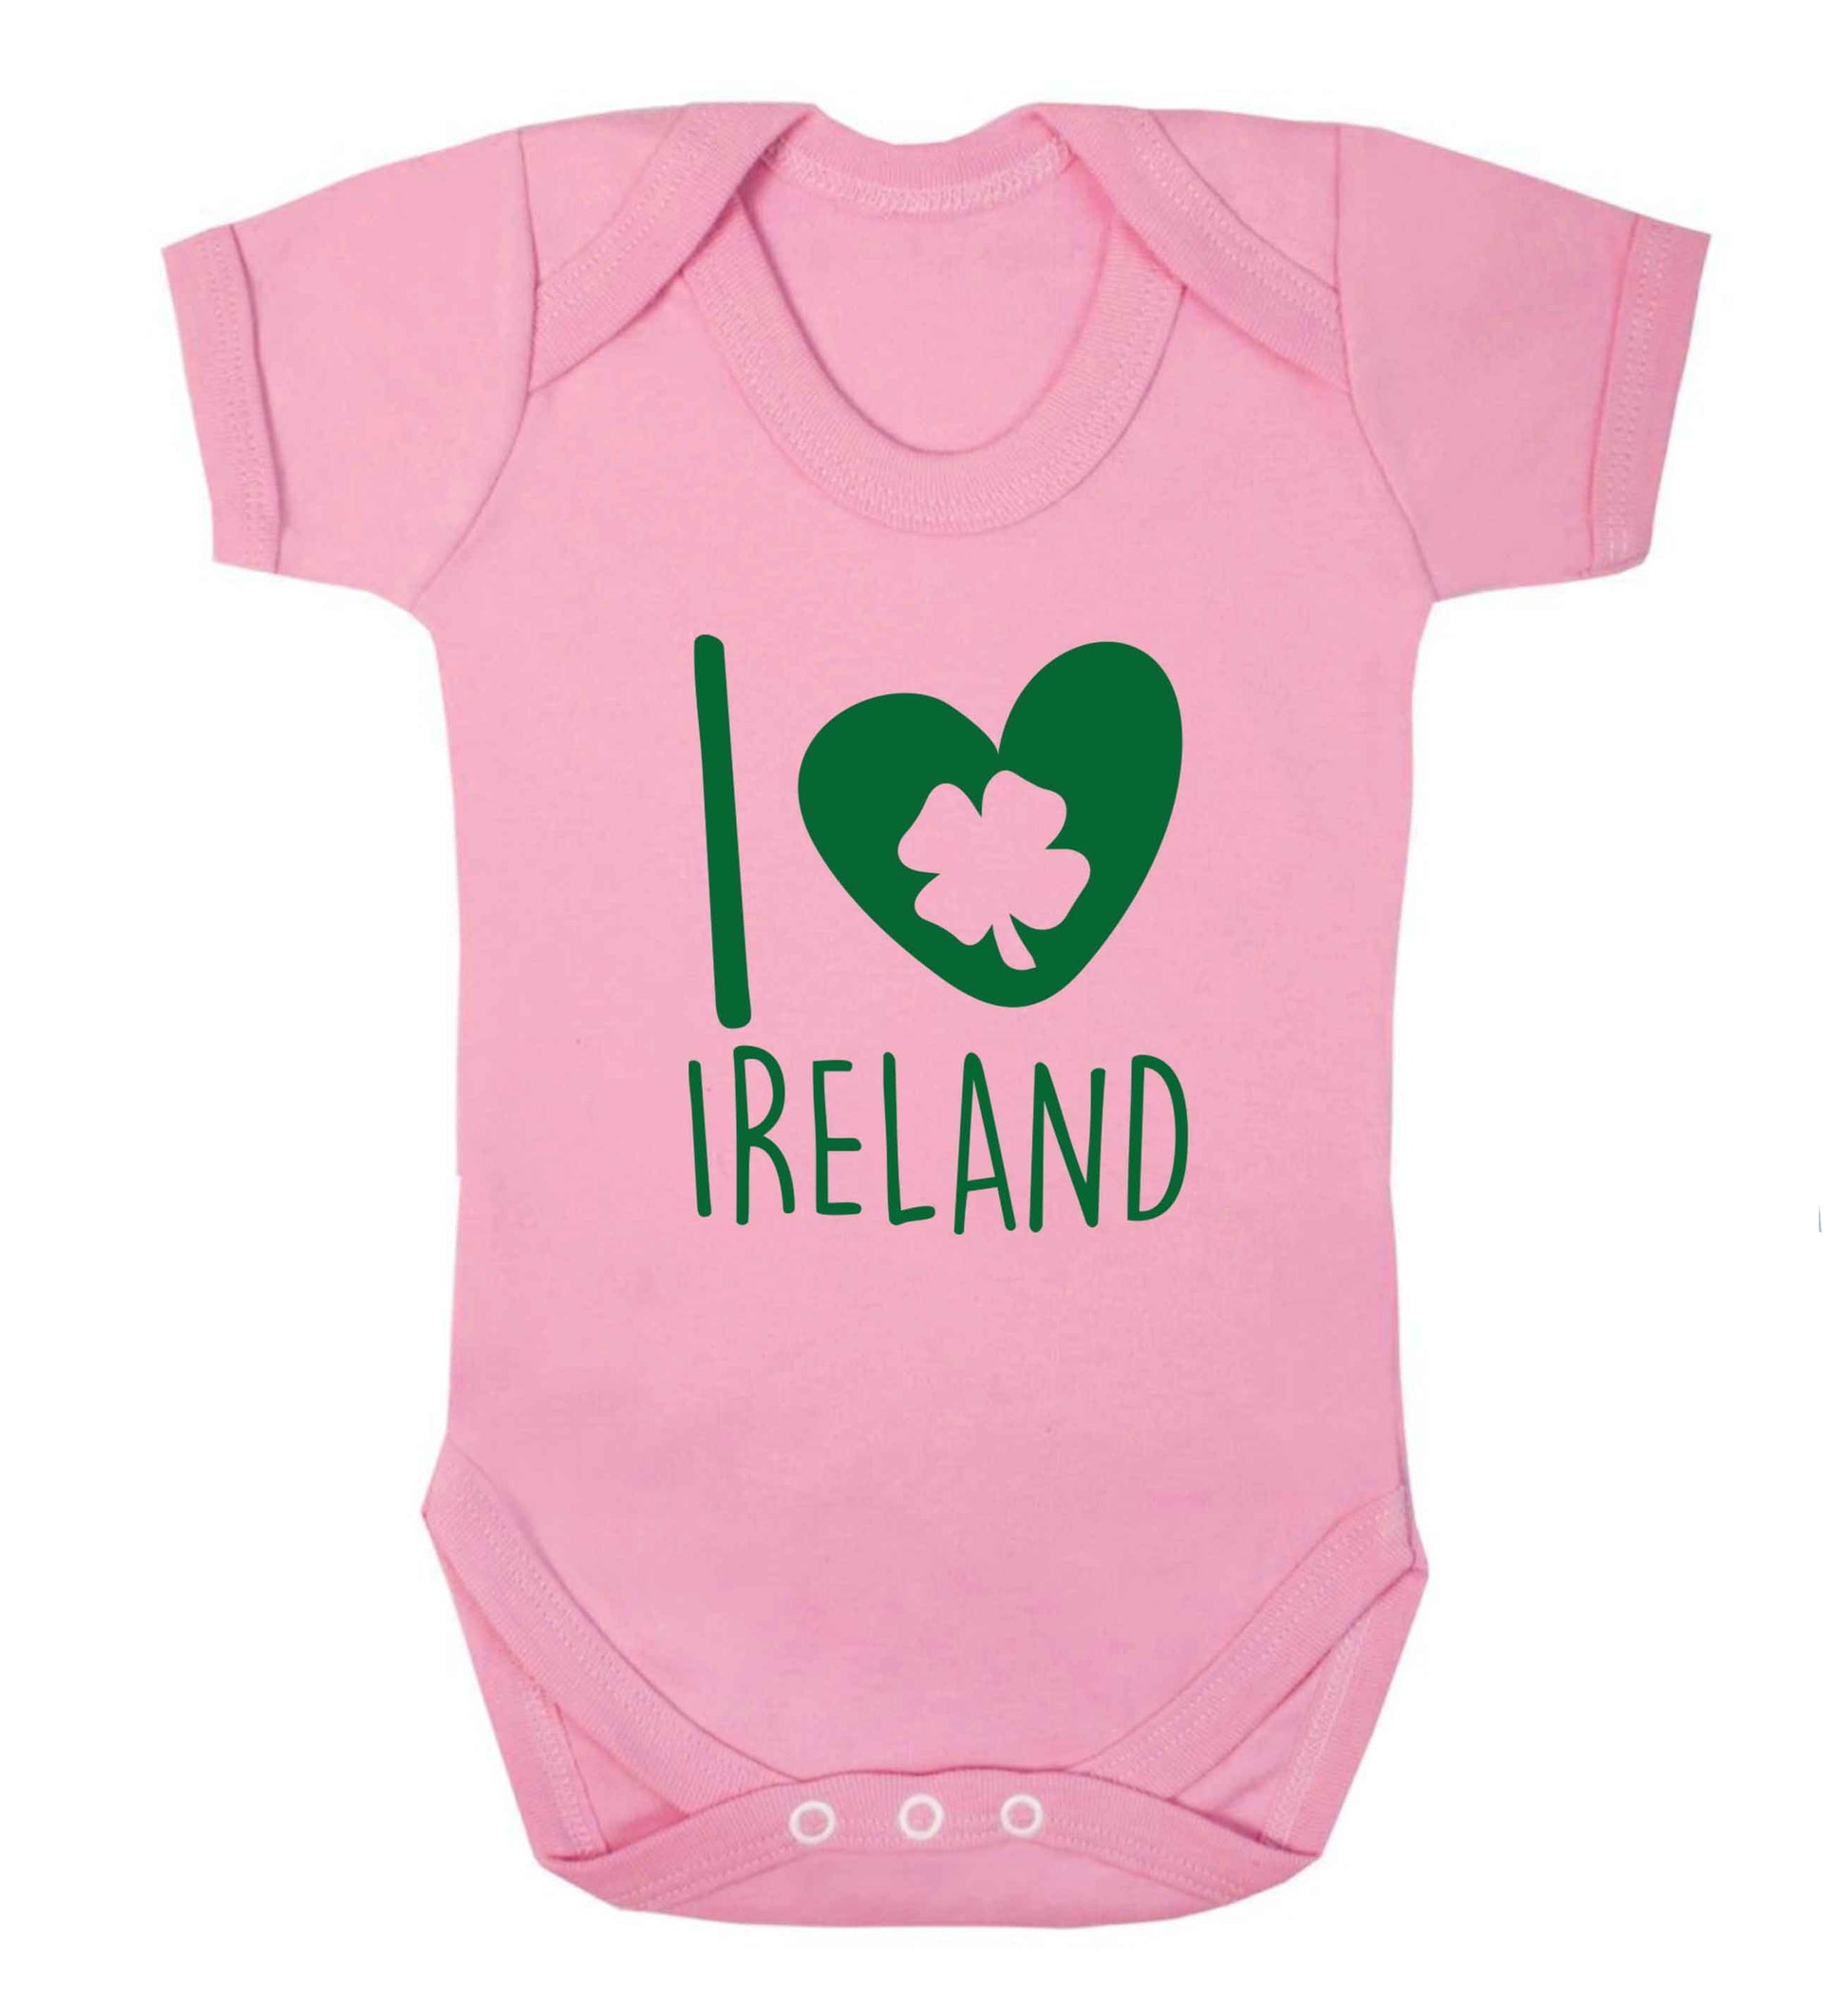 I love Ireland baby vest pale pink 18-24 months